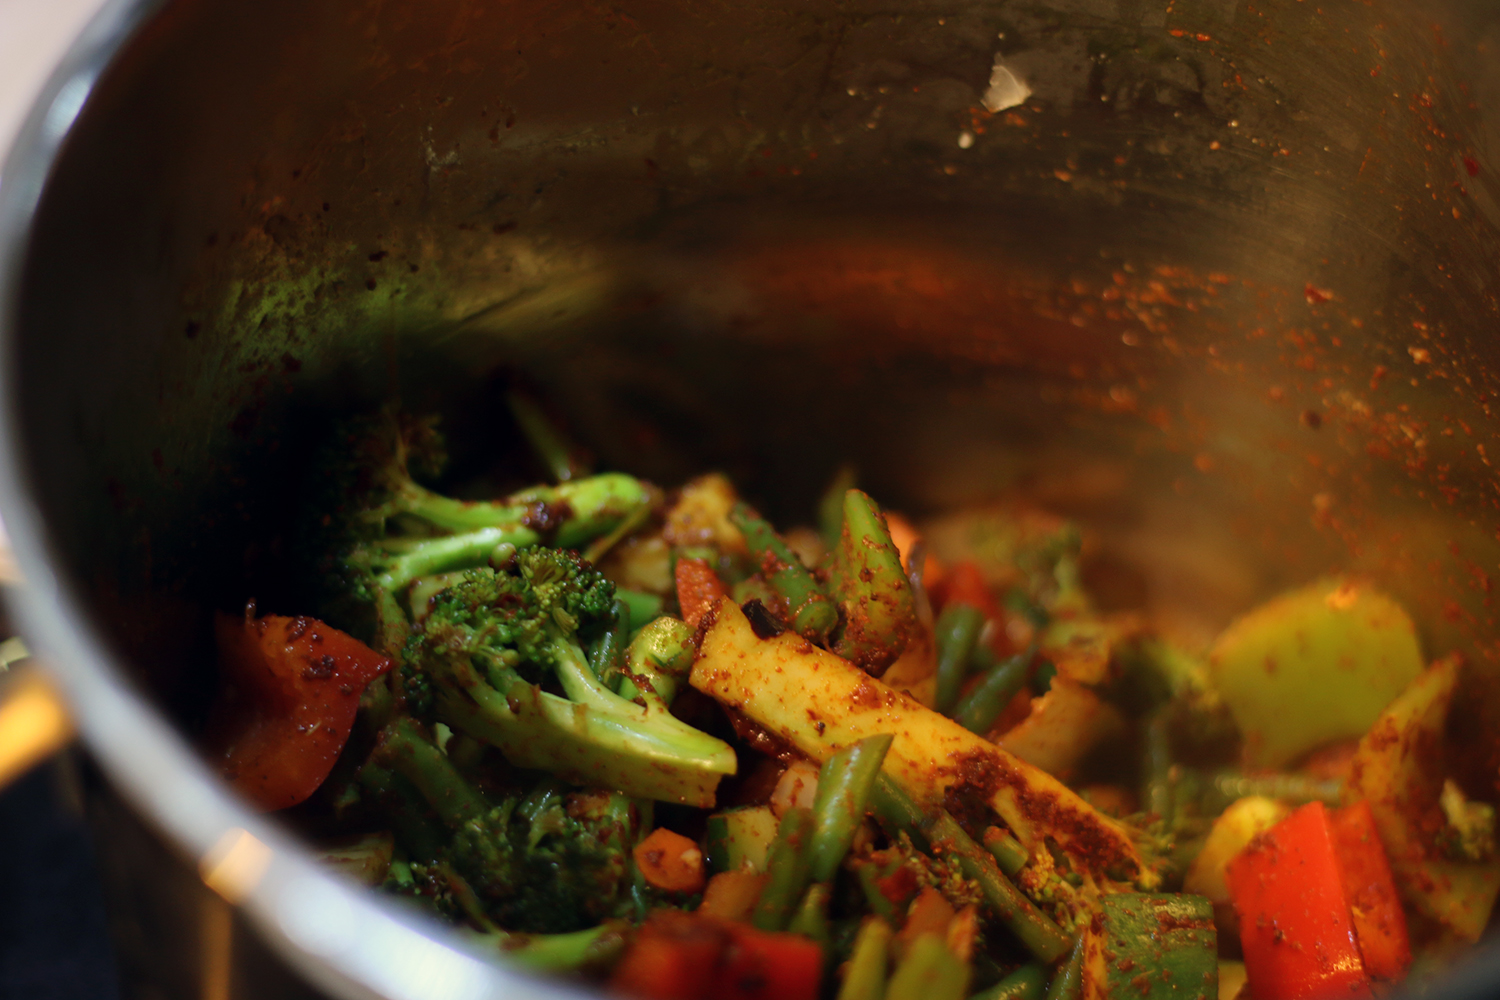 URBANEBLOC - Vegetarian Chili Recipe